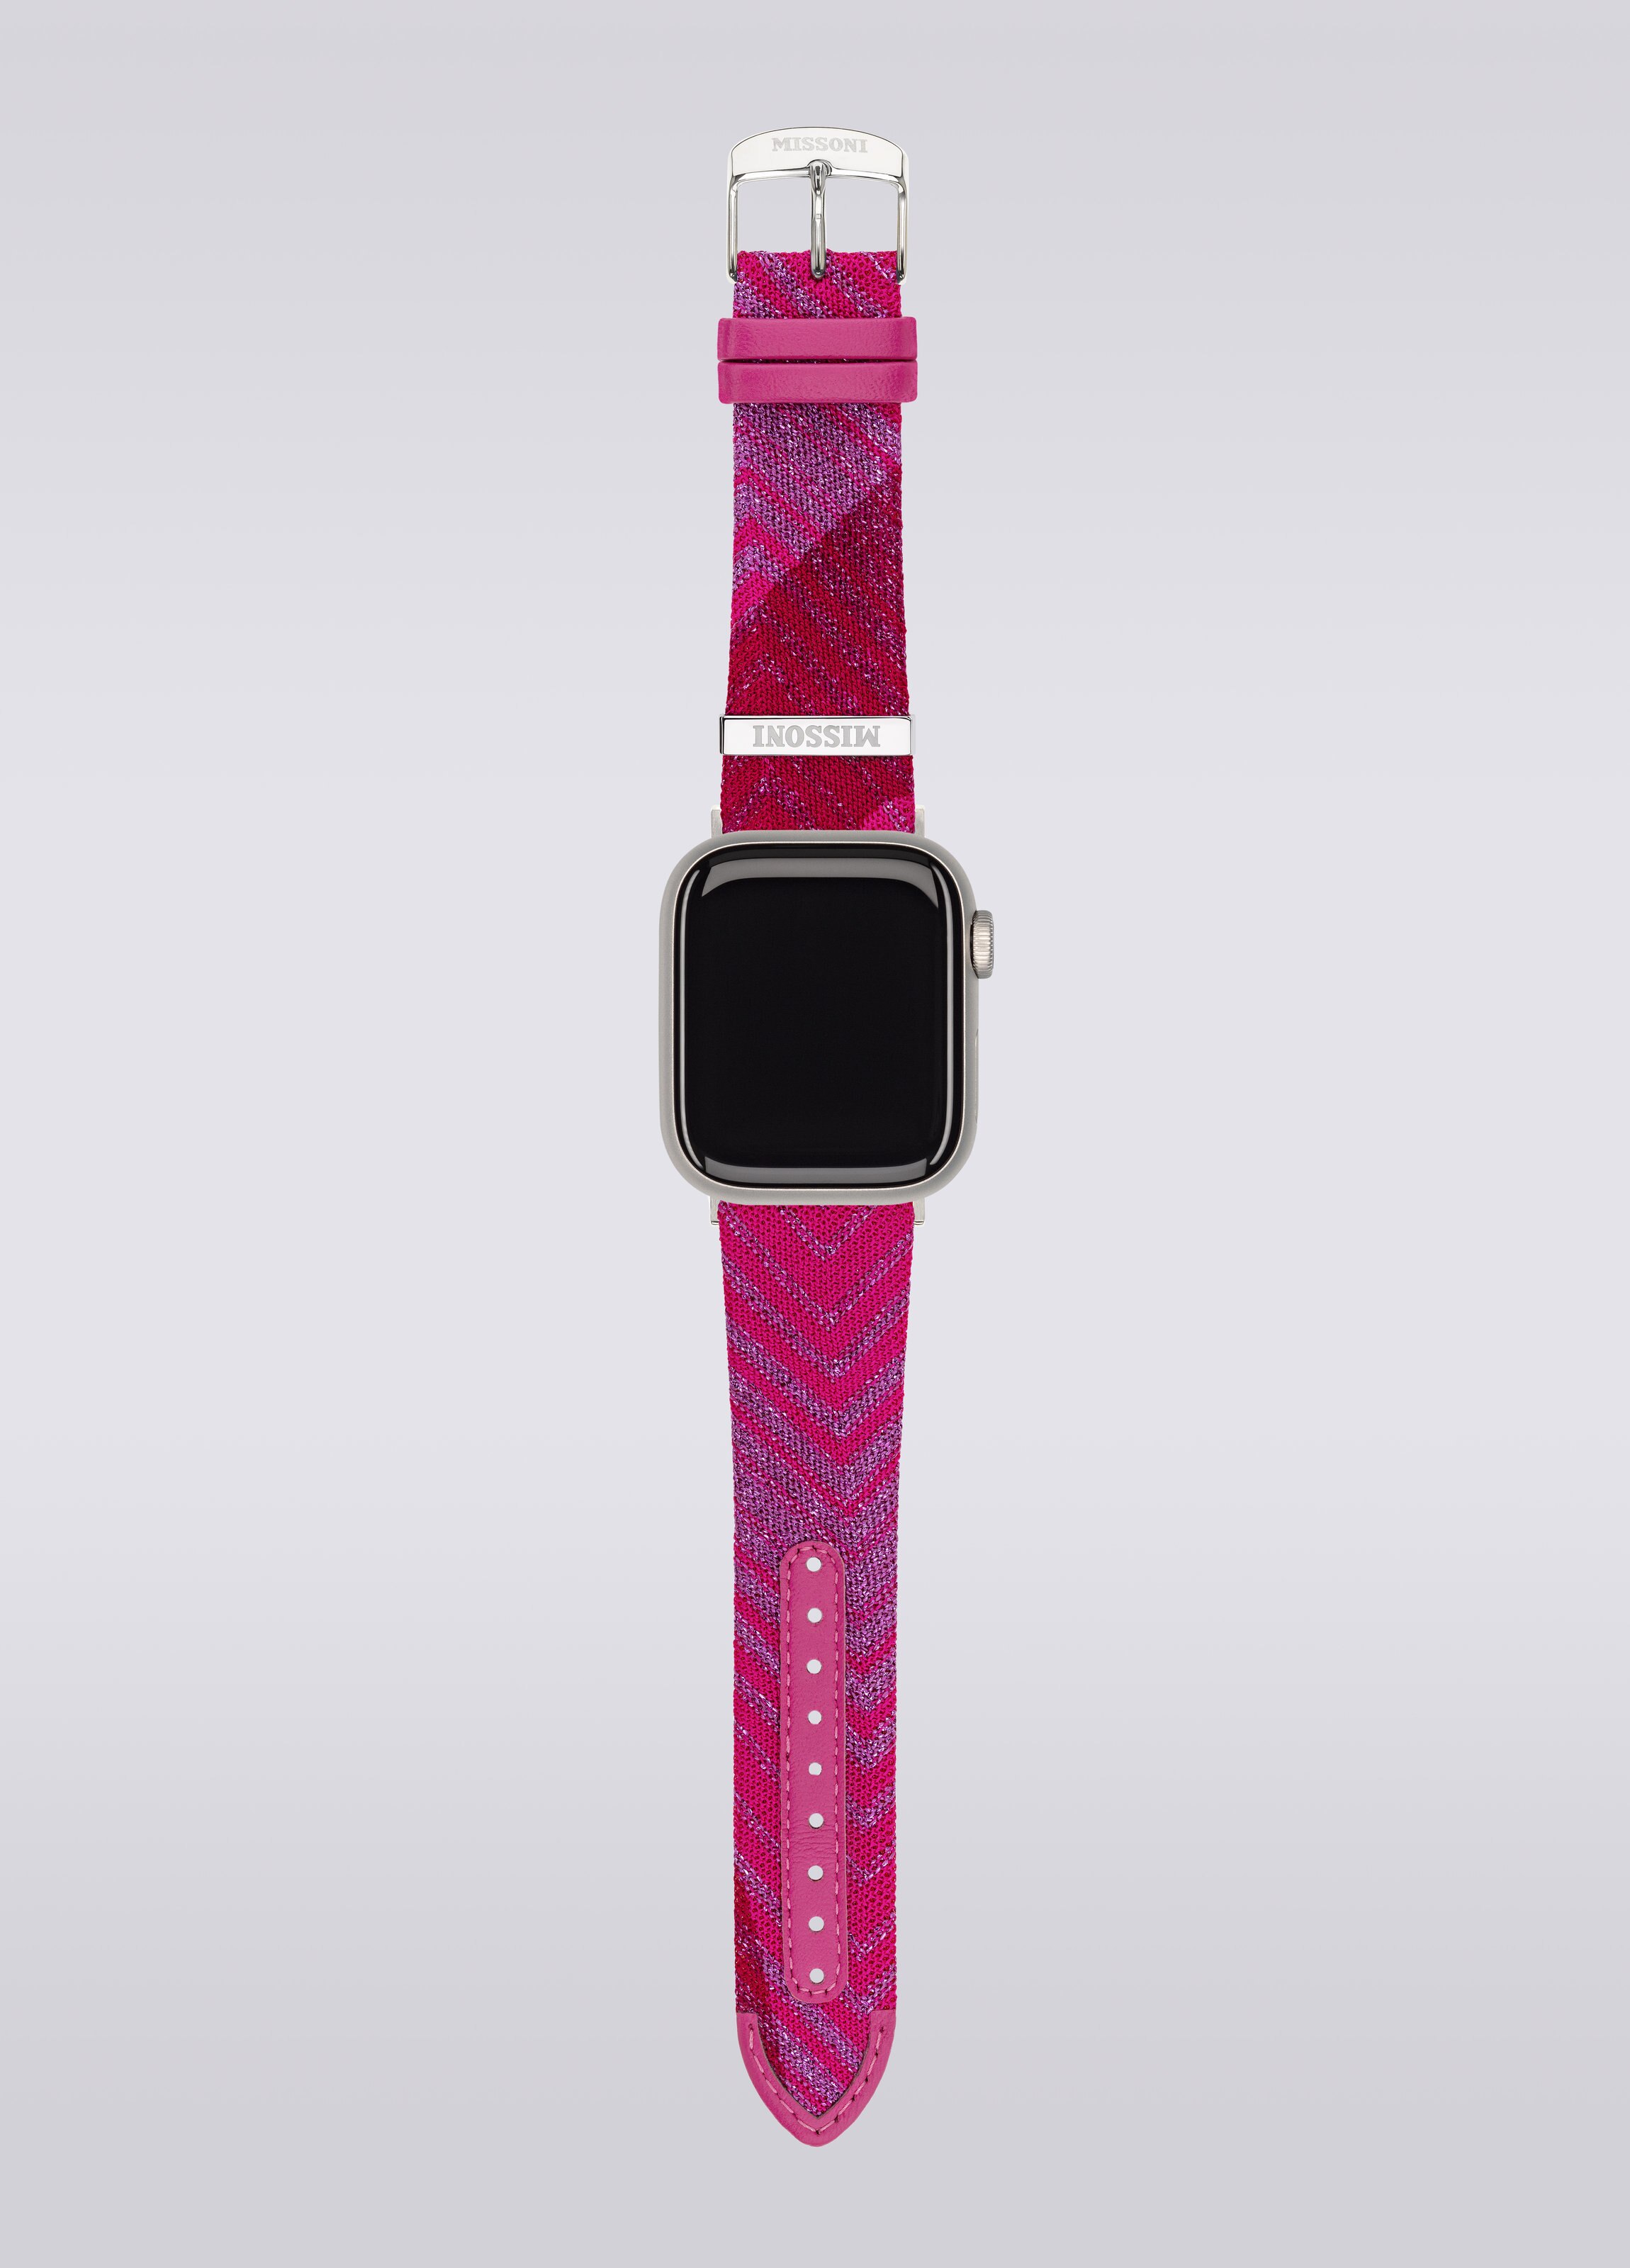 Missoniファブリック 22mm Apple watch対応ストラップ, ピンク   - 3